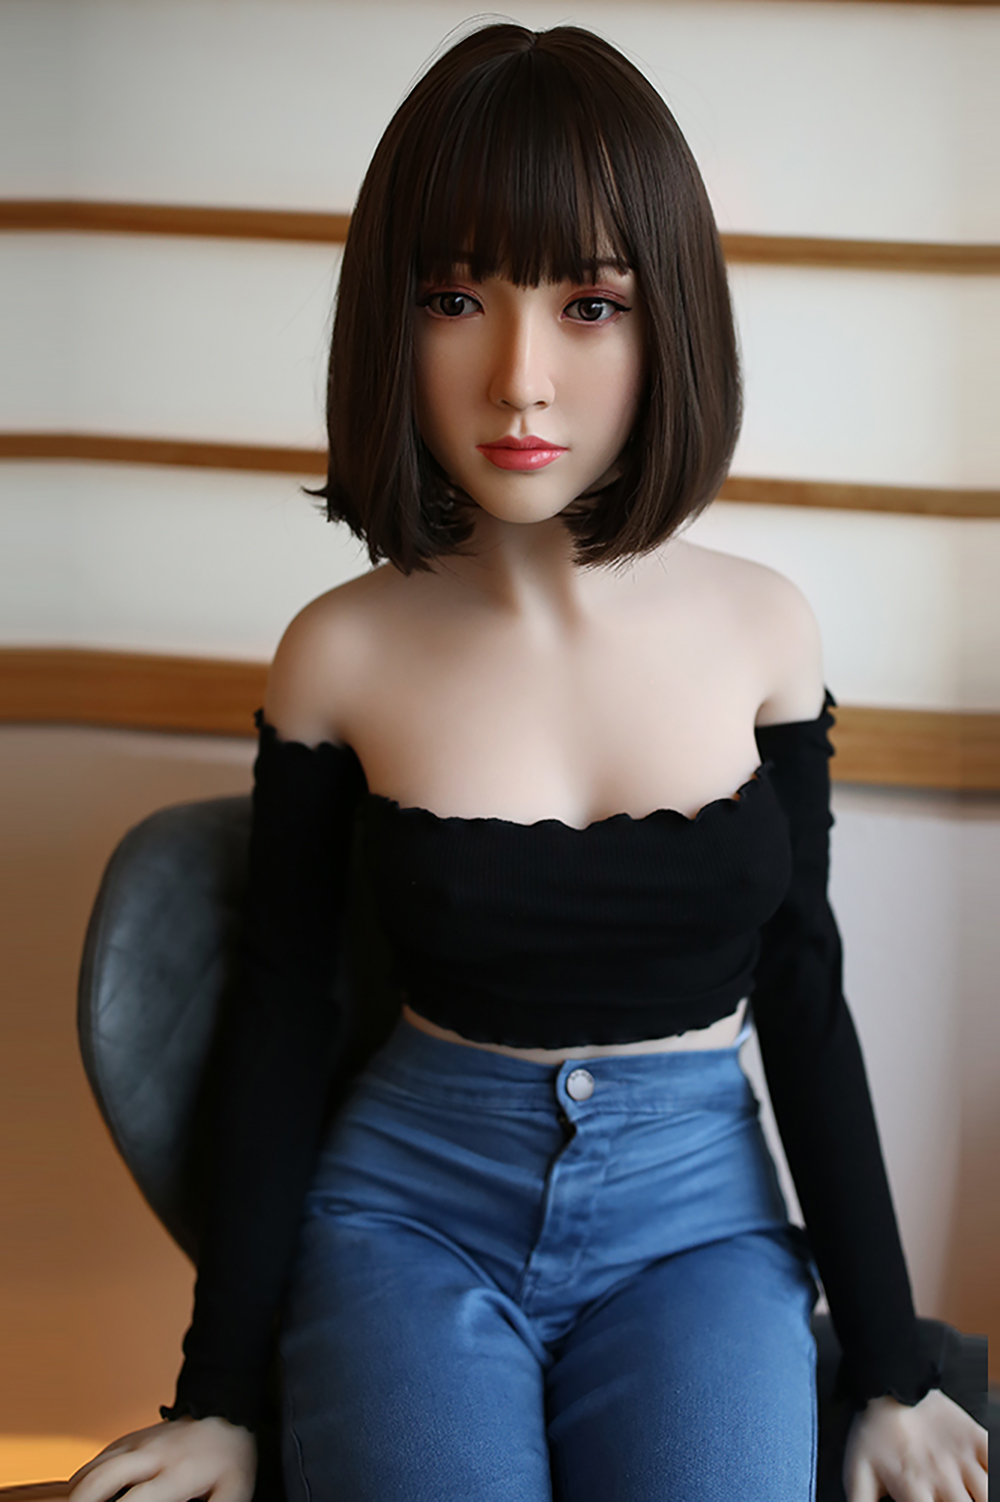 Asiatische sex doll Erwachsene puppe